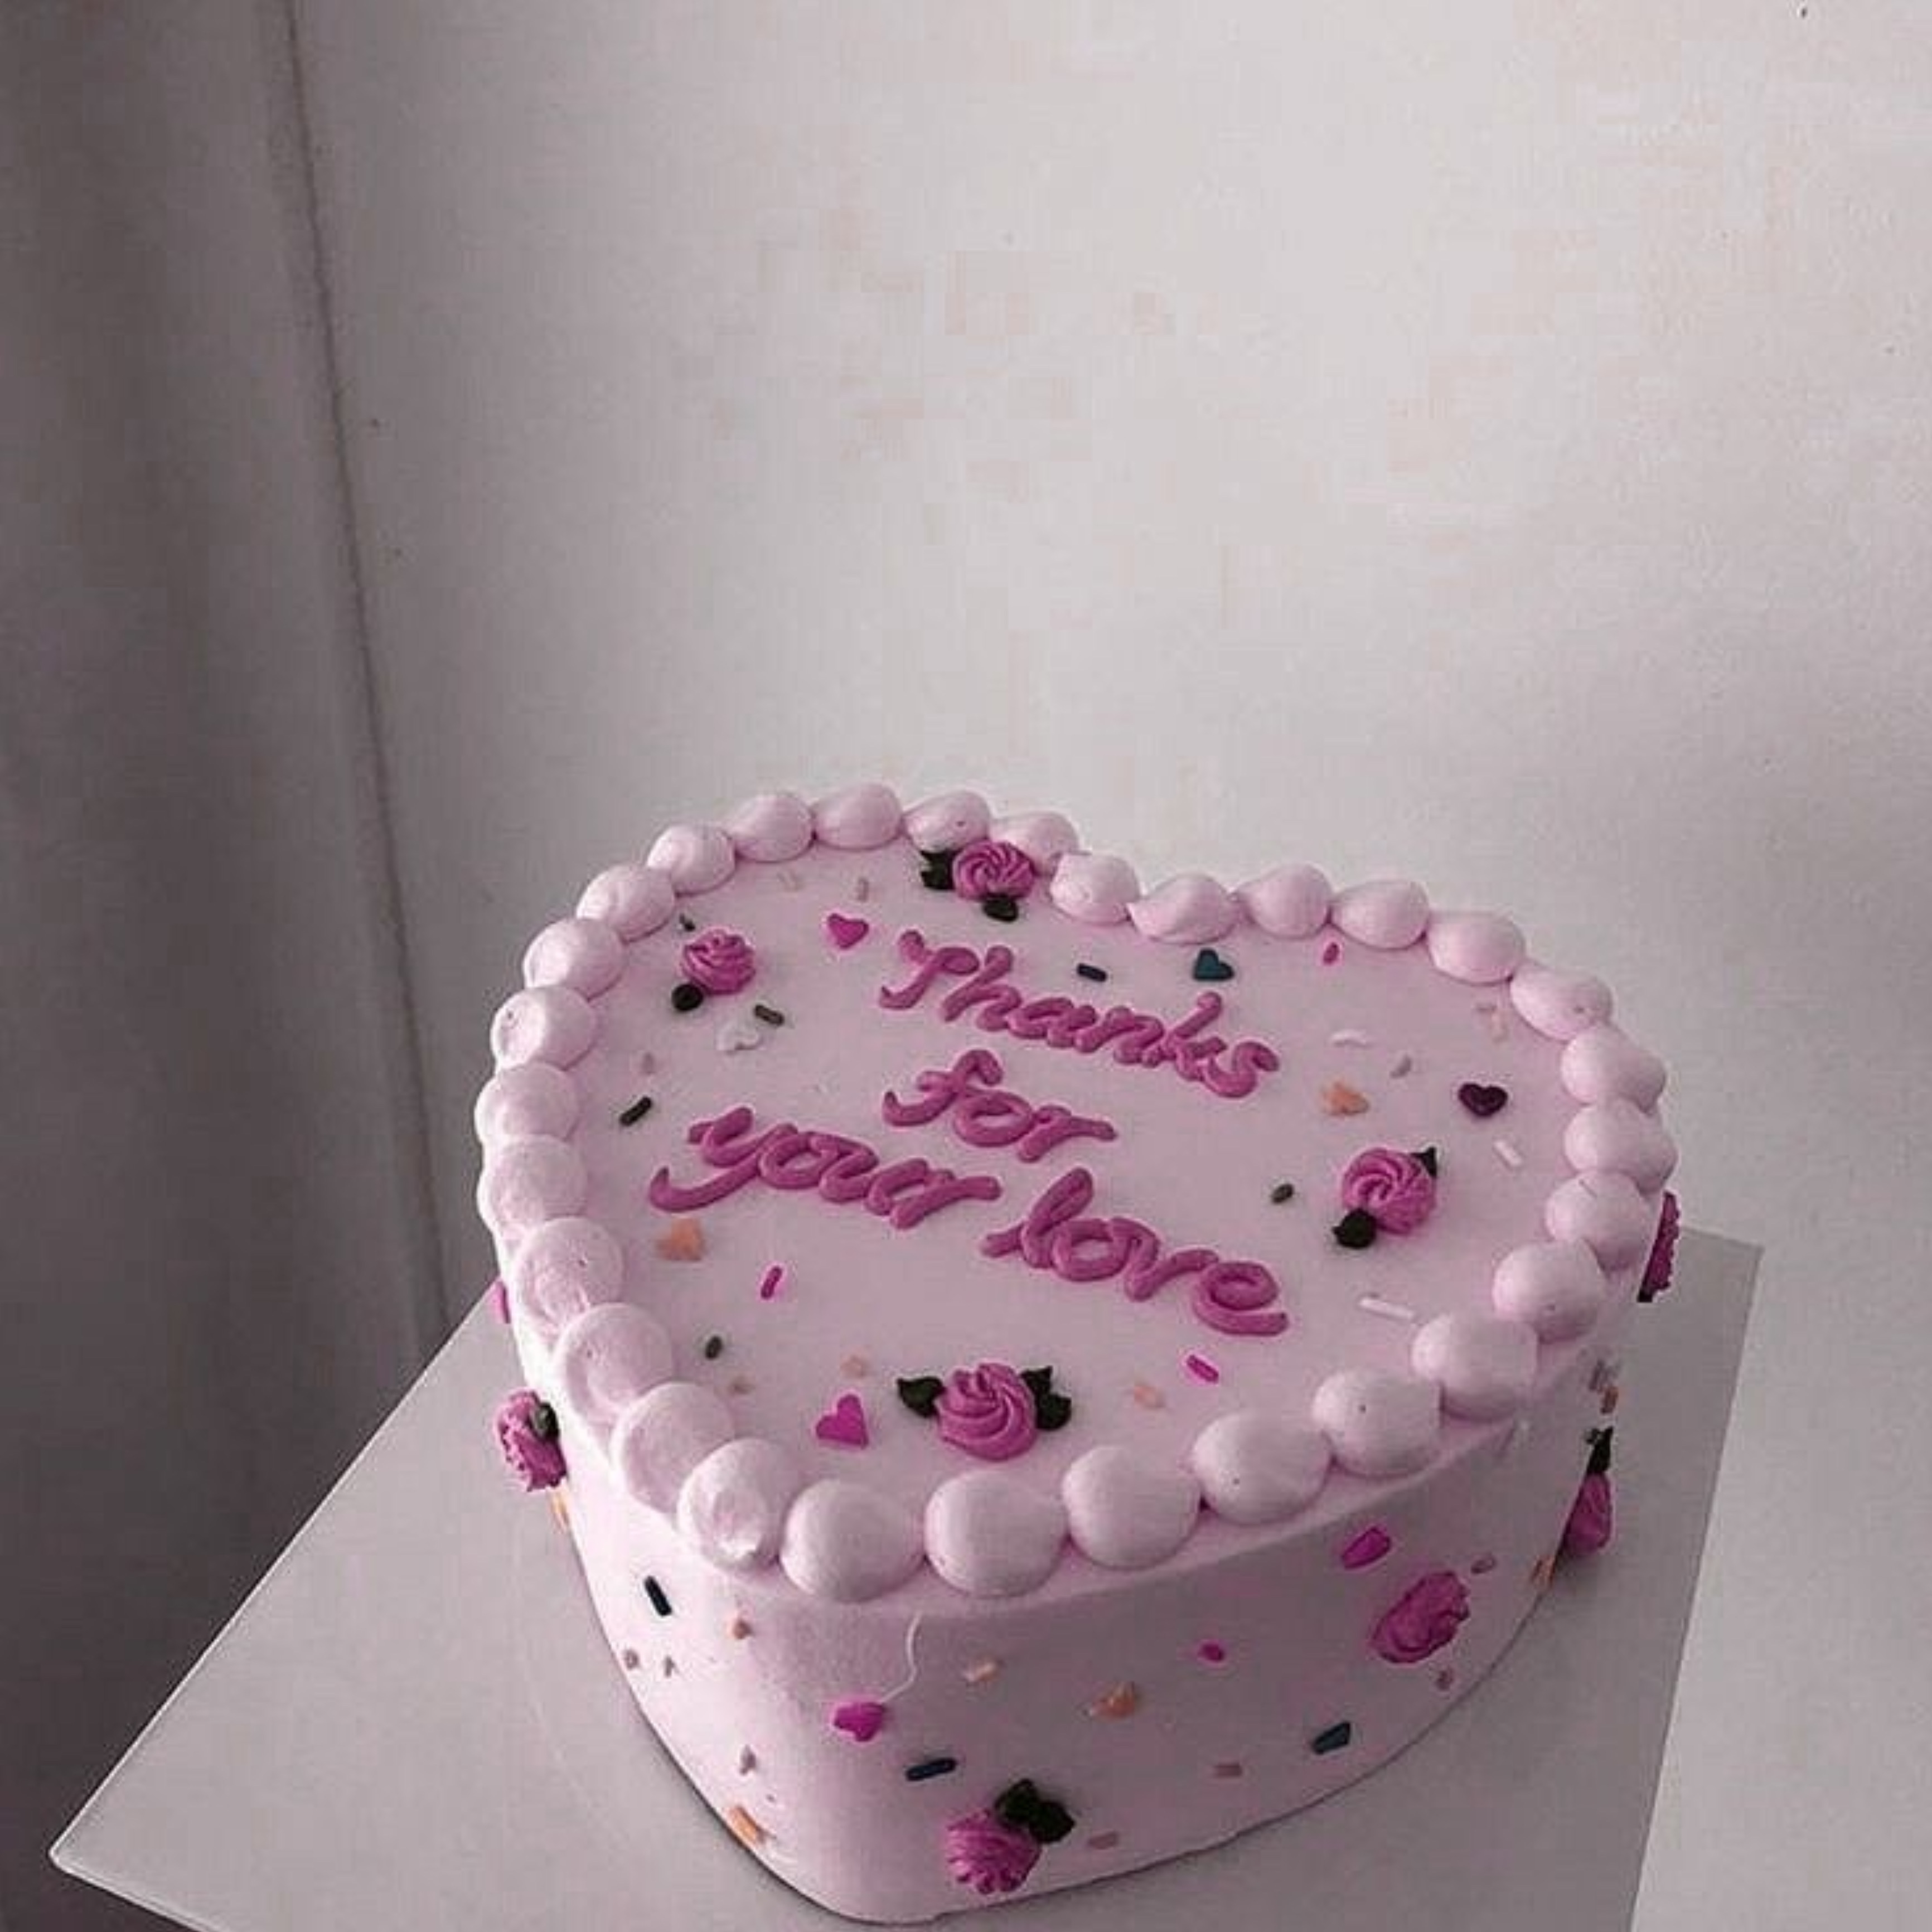 NEW* 7'' heart shaped cake *48 Hr Notice* - Butter Lane-sgquangbinhtourist.com.vn